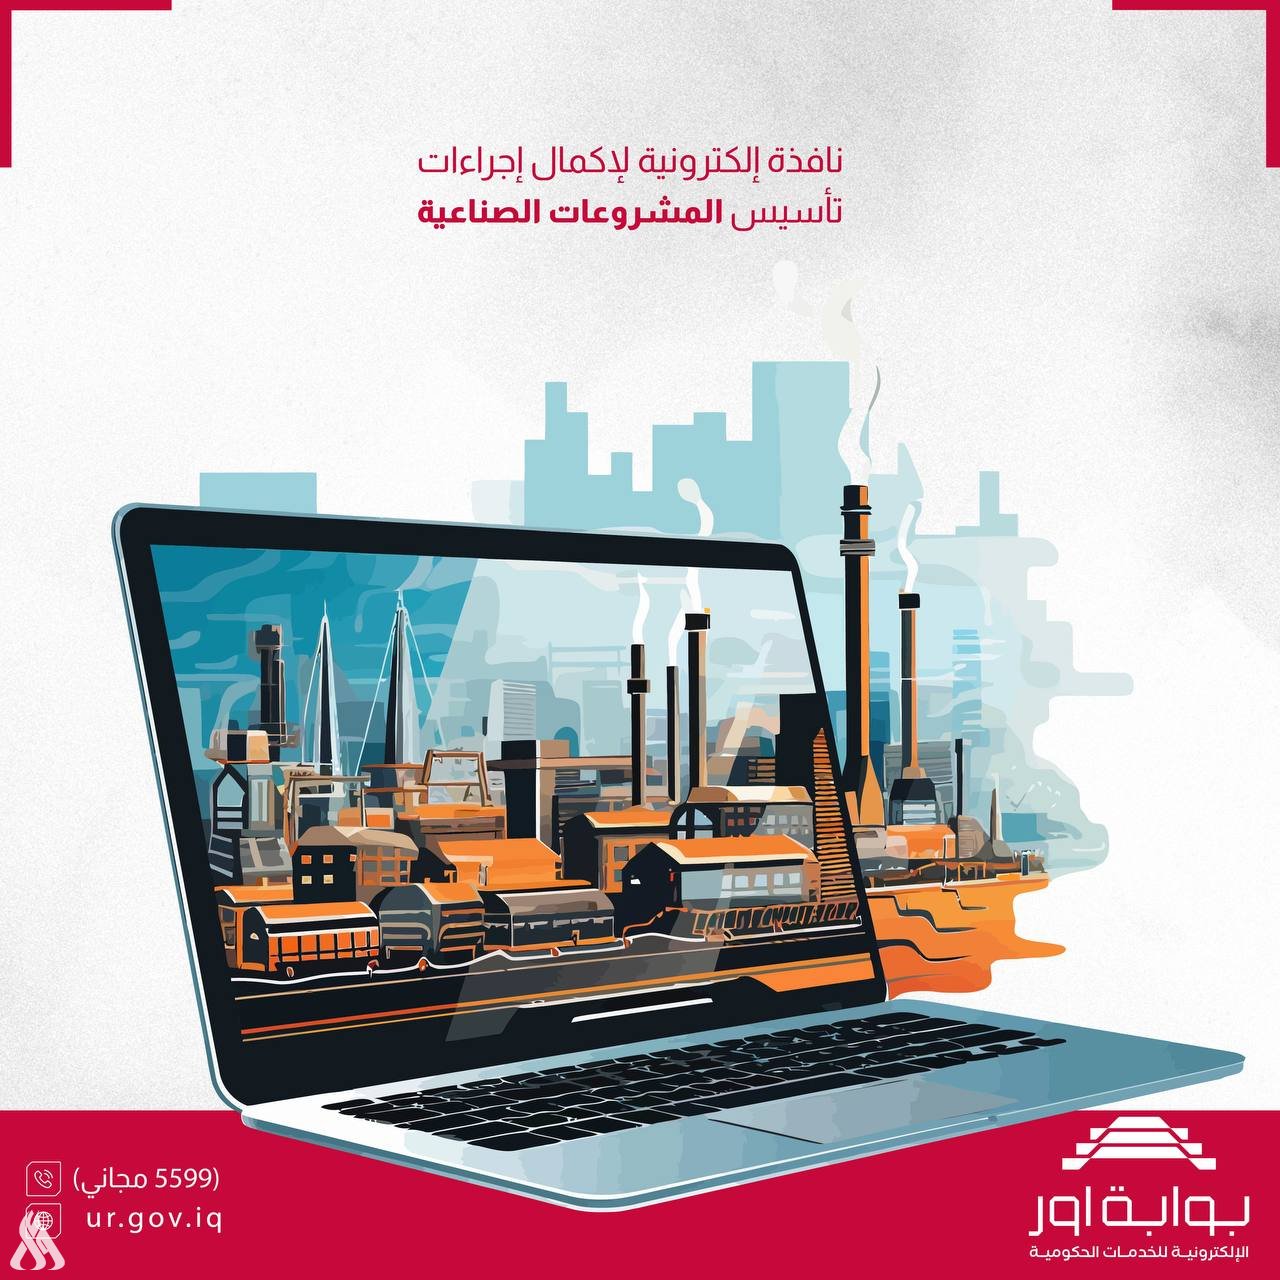 مركز البيانات الوطني يؤكد قرب إطلاق نافذة إلكترونية خاصة بتأسيس المشاريع الصناعية